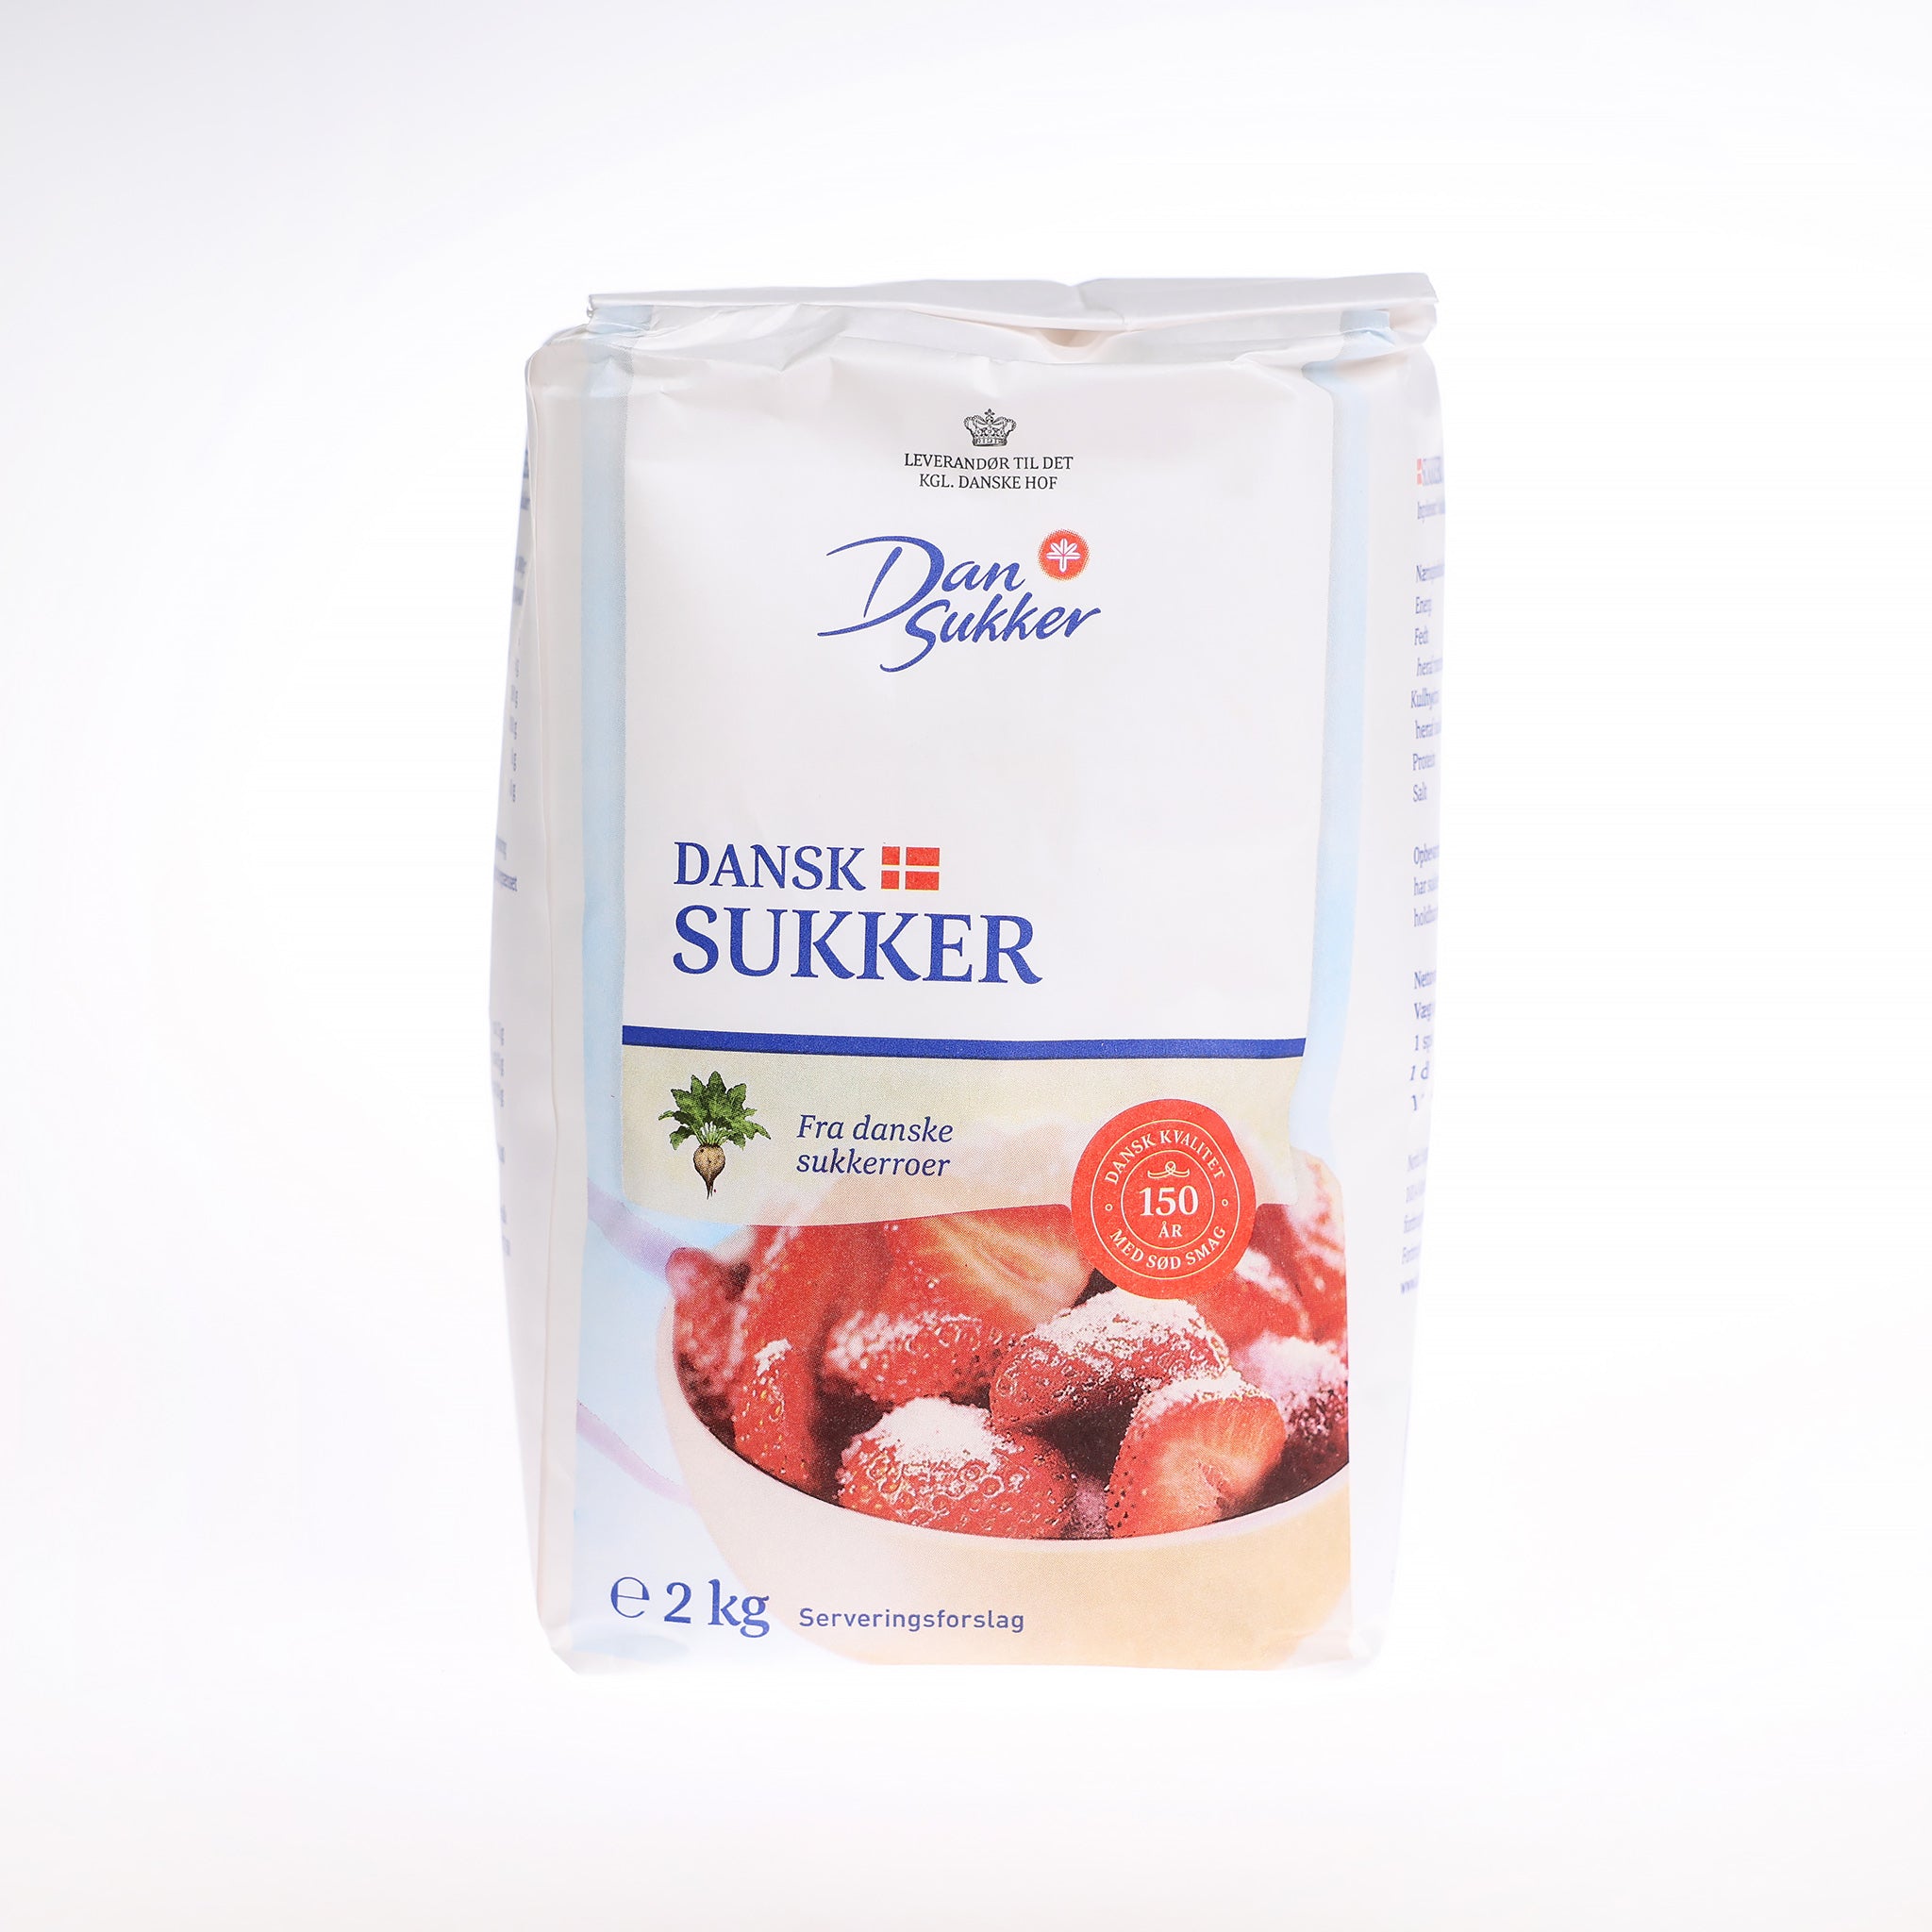 Stødt sukker fra Dansukker. Posen indeholder 2 kg. og er udvundet fra Danske sukkerroer. Perfekt til mange formål i køkkenet!